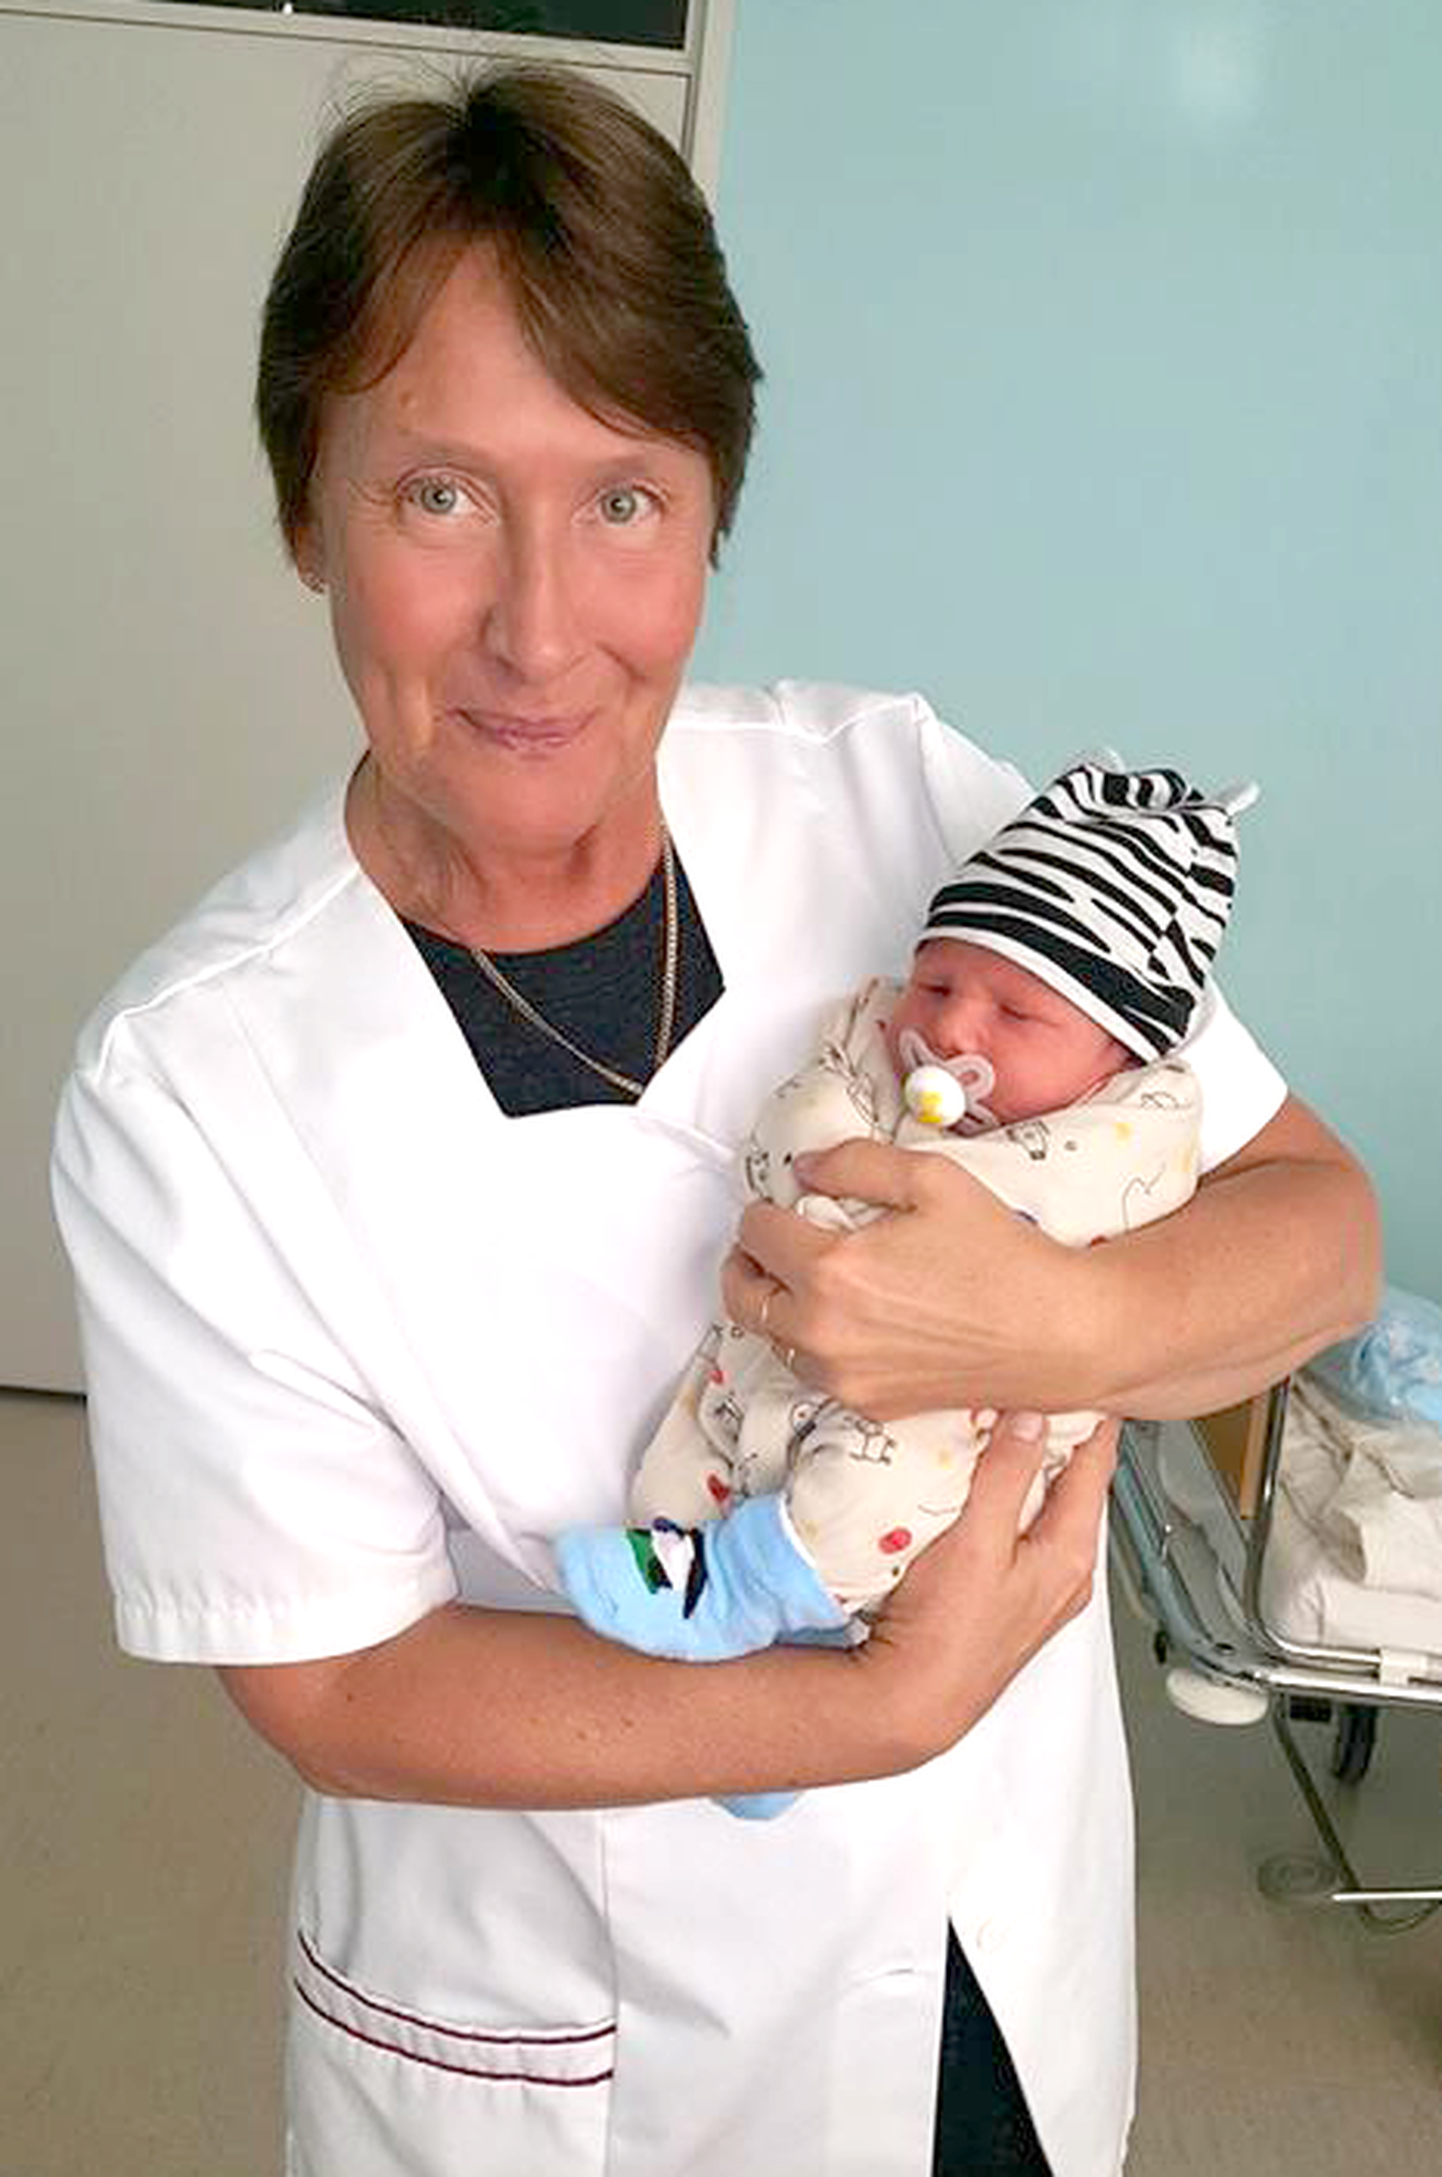 Ena Volmer vanemate siira tänuga saadetud pildil hiljuti sündinud beebiga, kes ei oleks täna elus, kui Valga sünnitusosakond oleks olnud kinni.